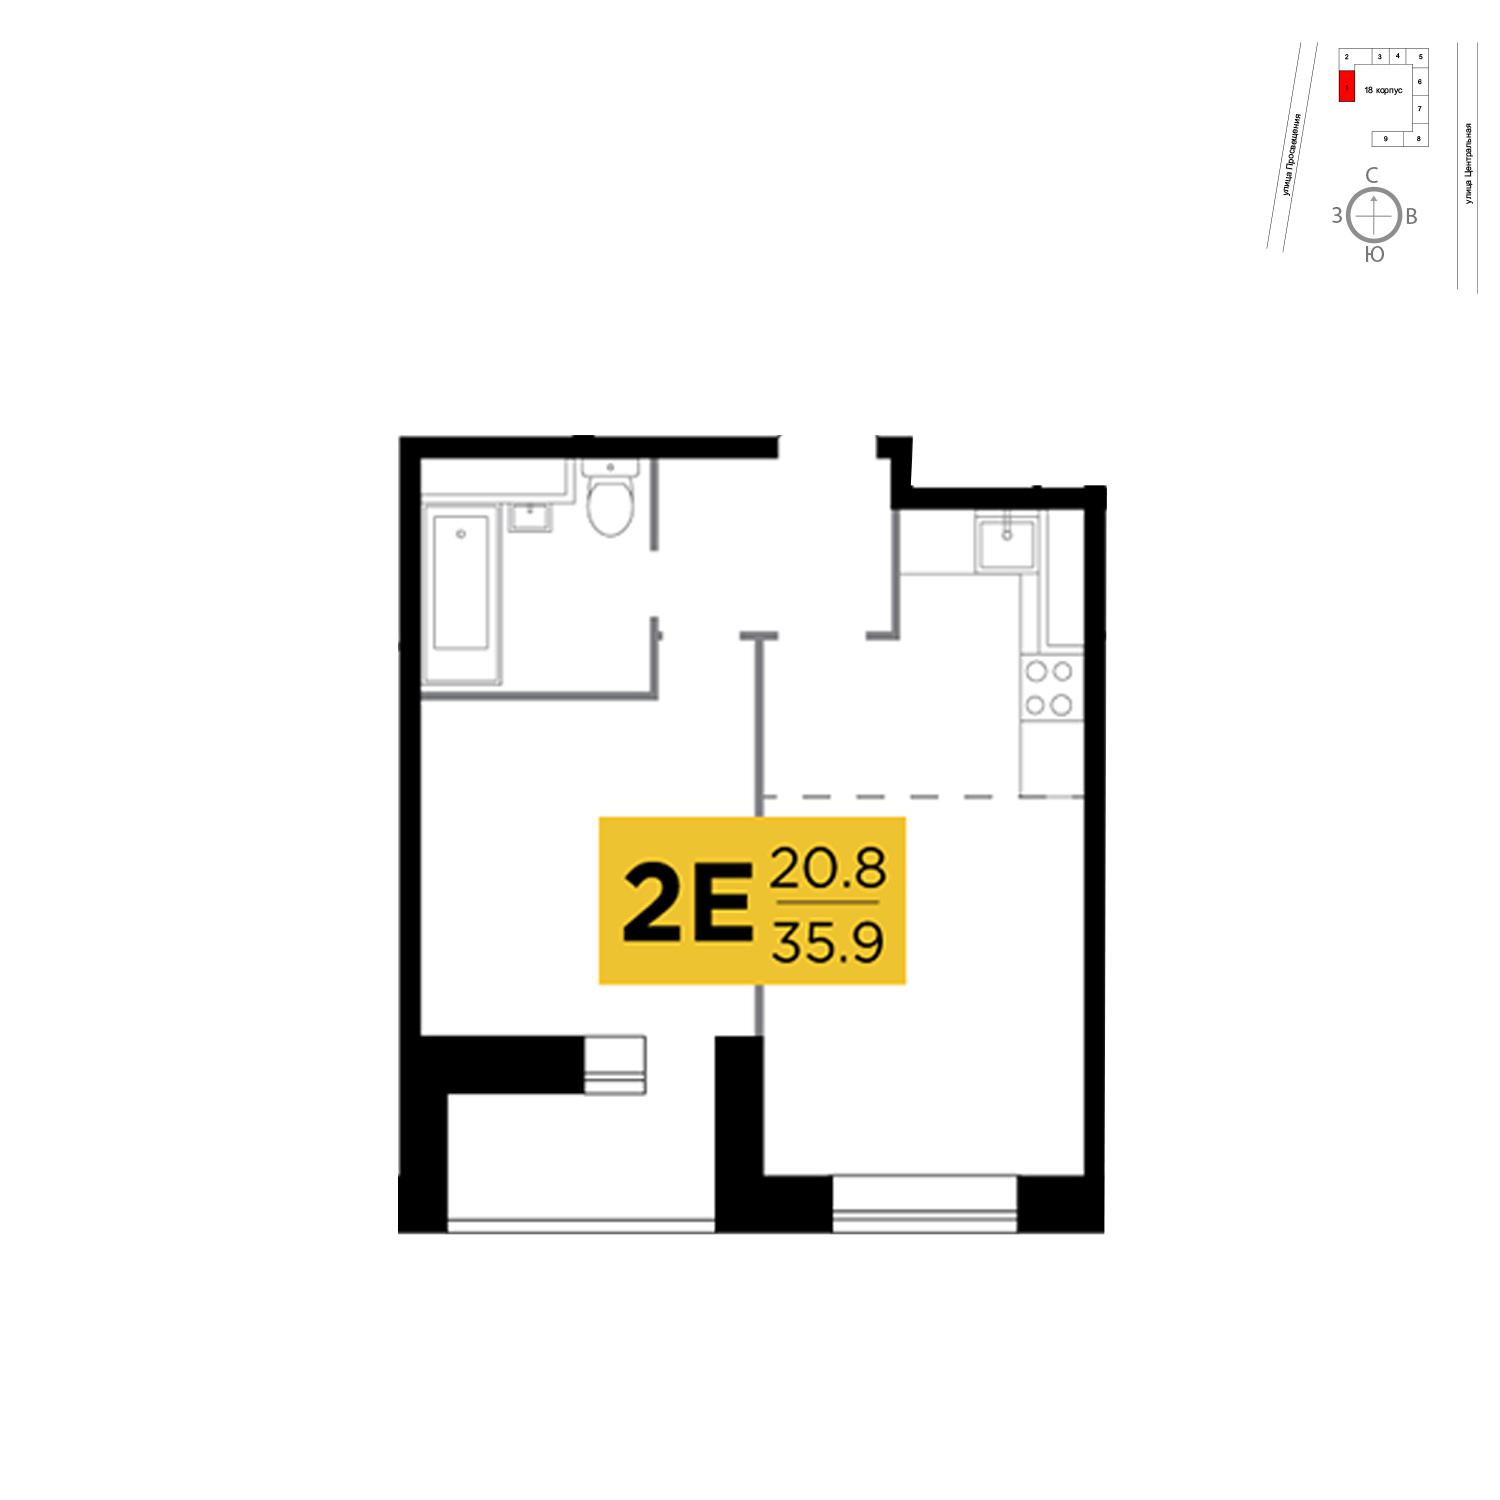 Продаётся 2-комнатная квартира в новостройке 35.9 кв.м. этаж 14/16 за 2 684 099 руб 